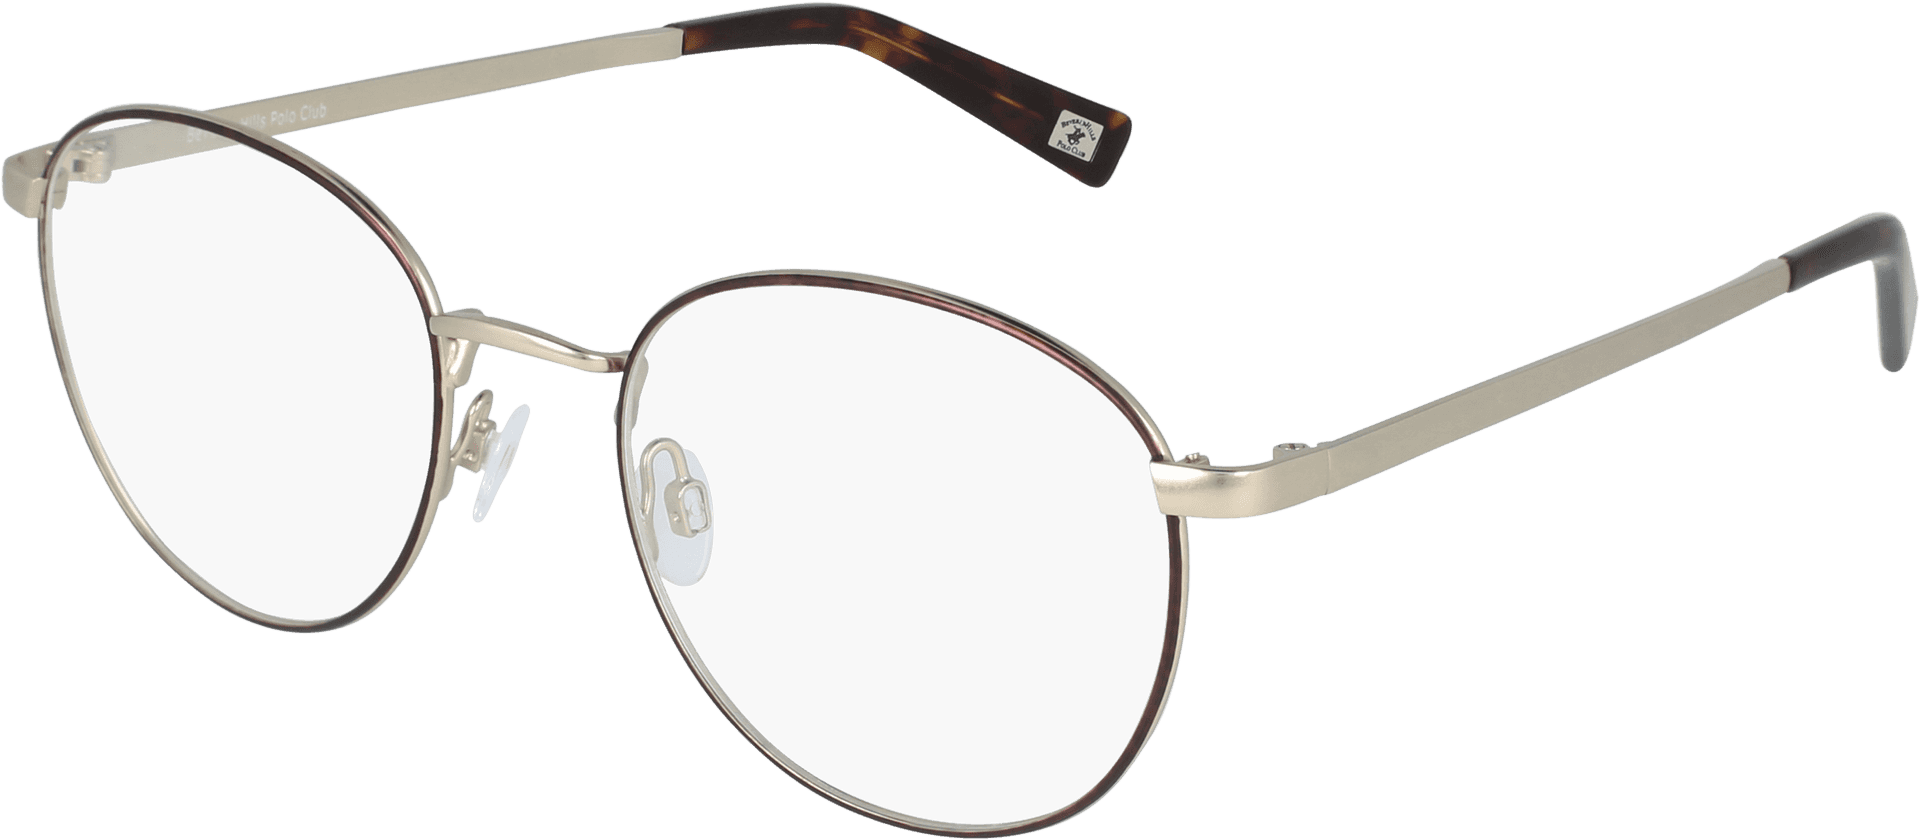 Elegant Round Eyeglasses Transparent Background PNG